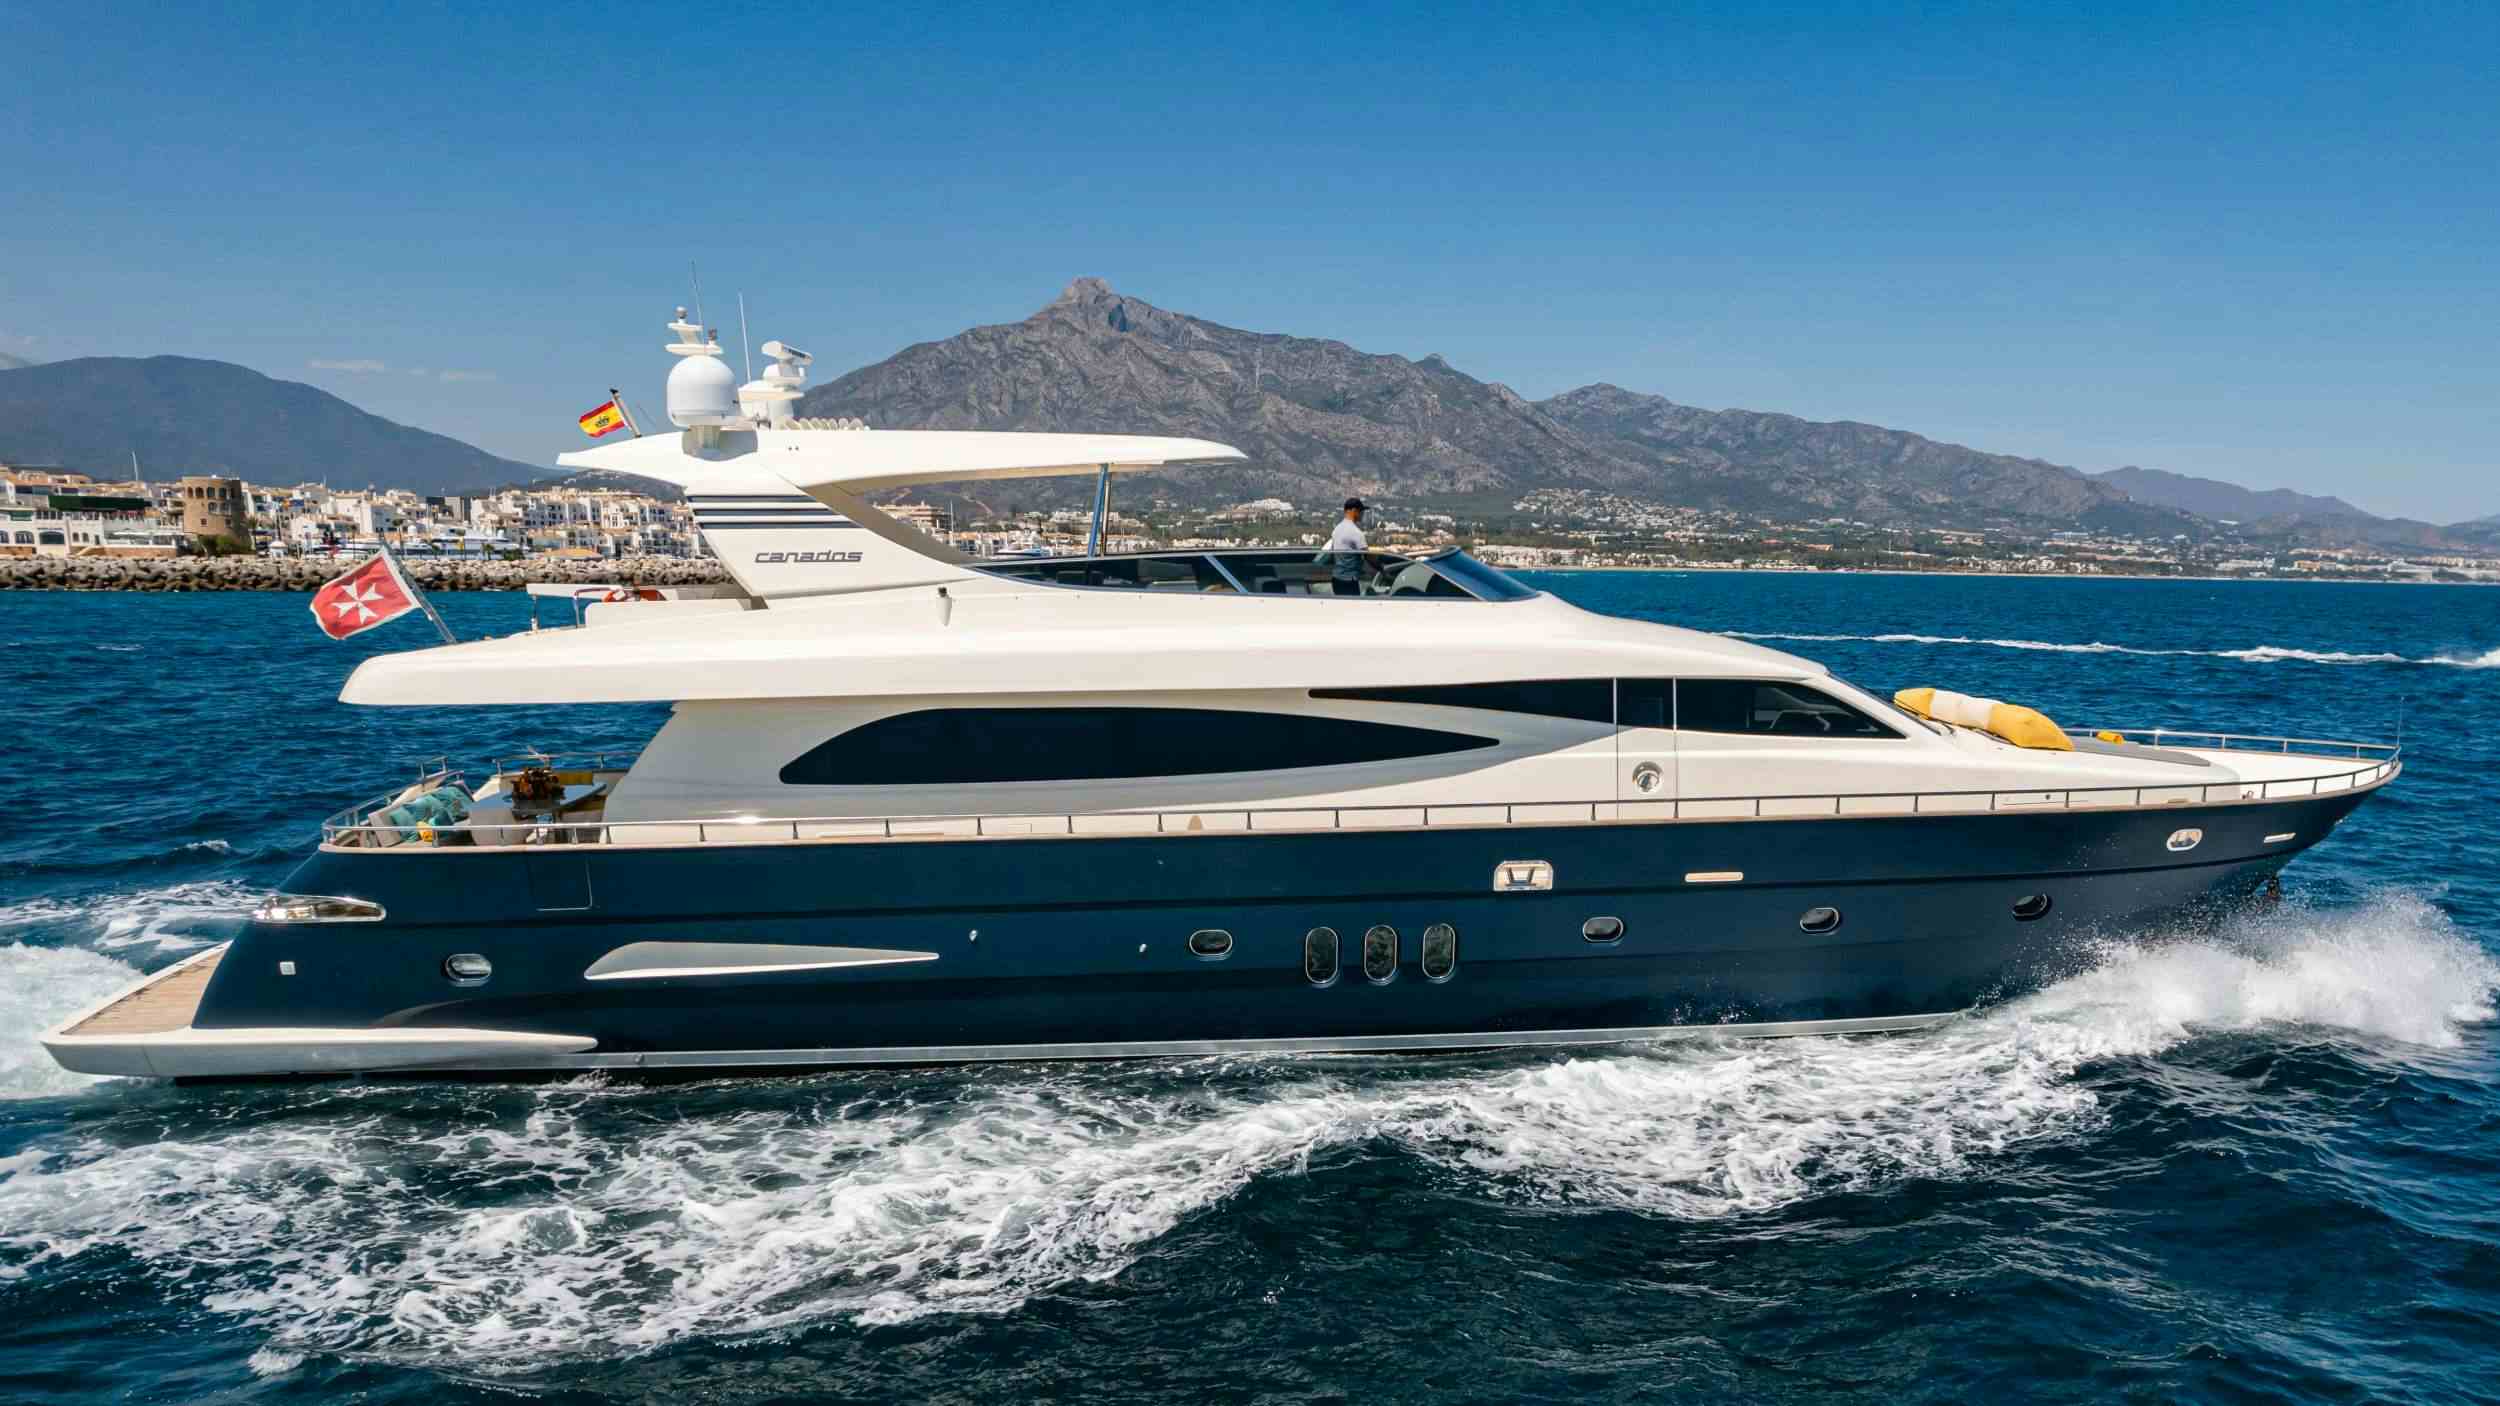 Fourteen - Yacht Charter Calanova & Boat hire in Balearics & Spain 1